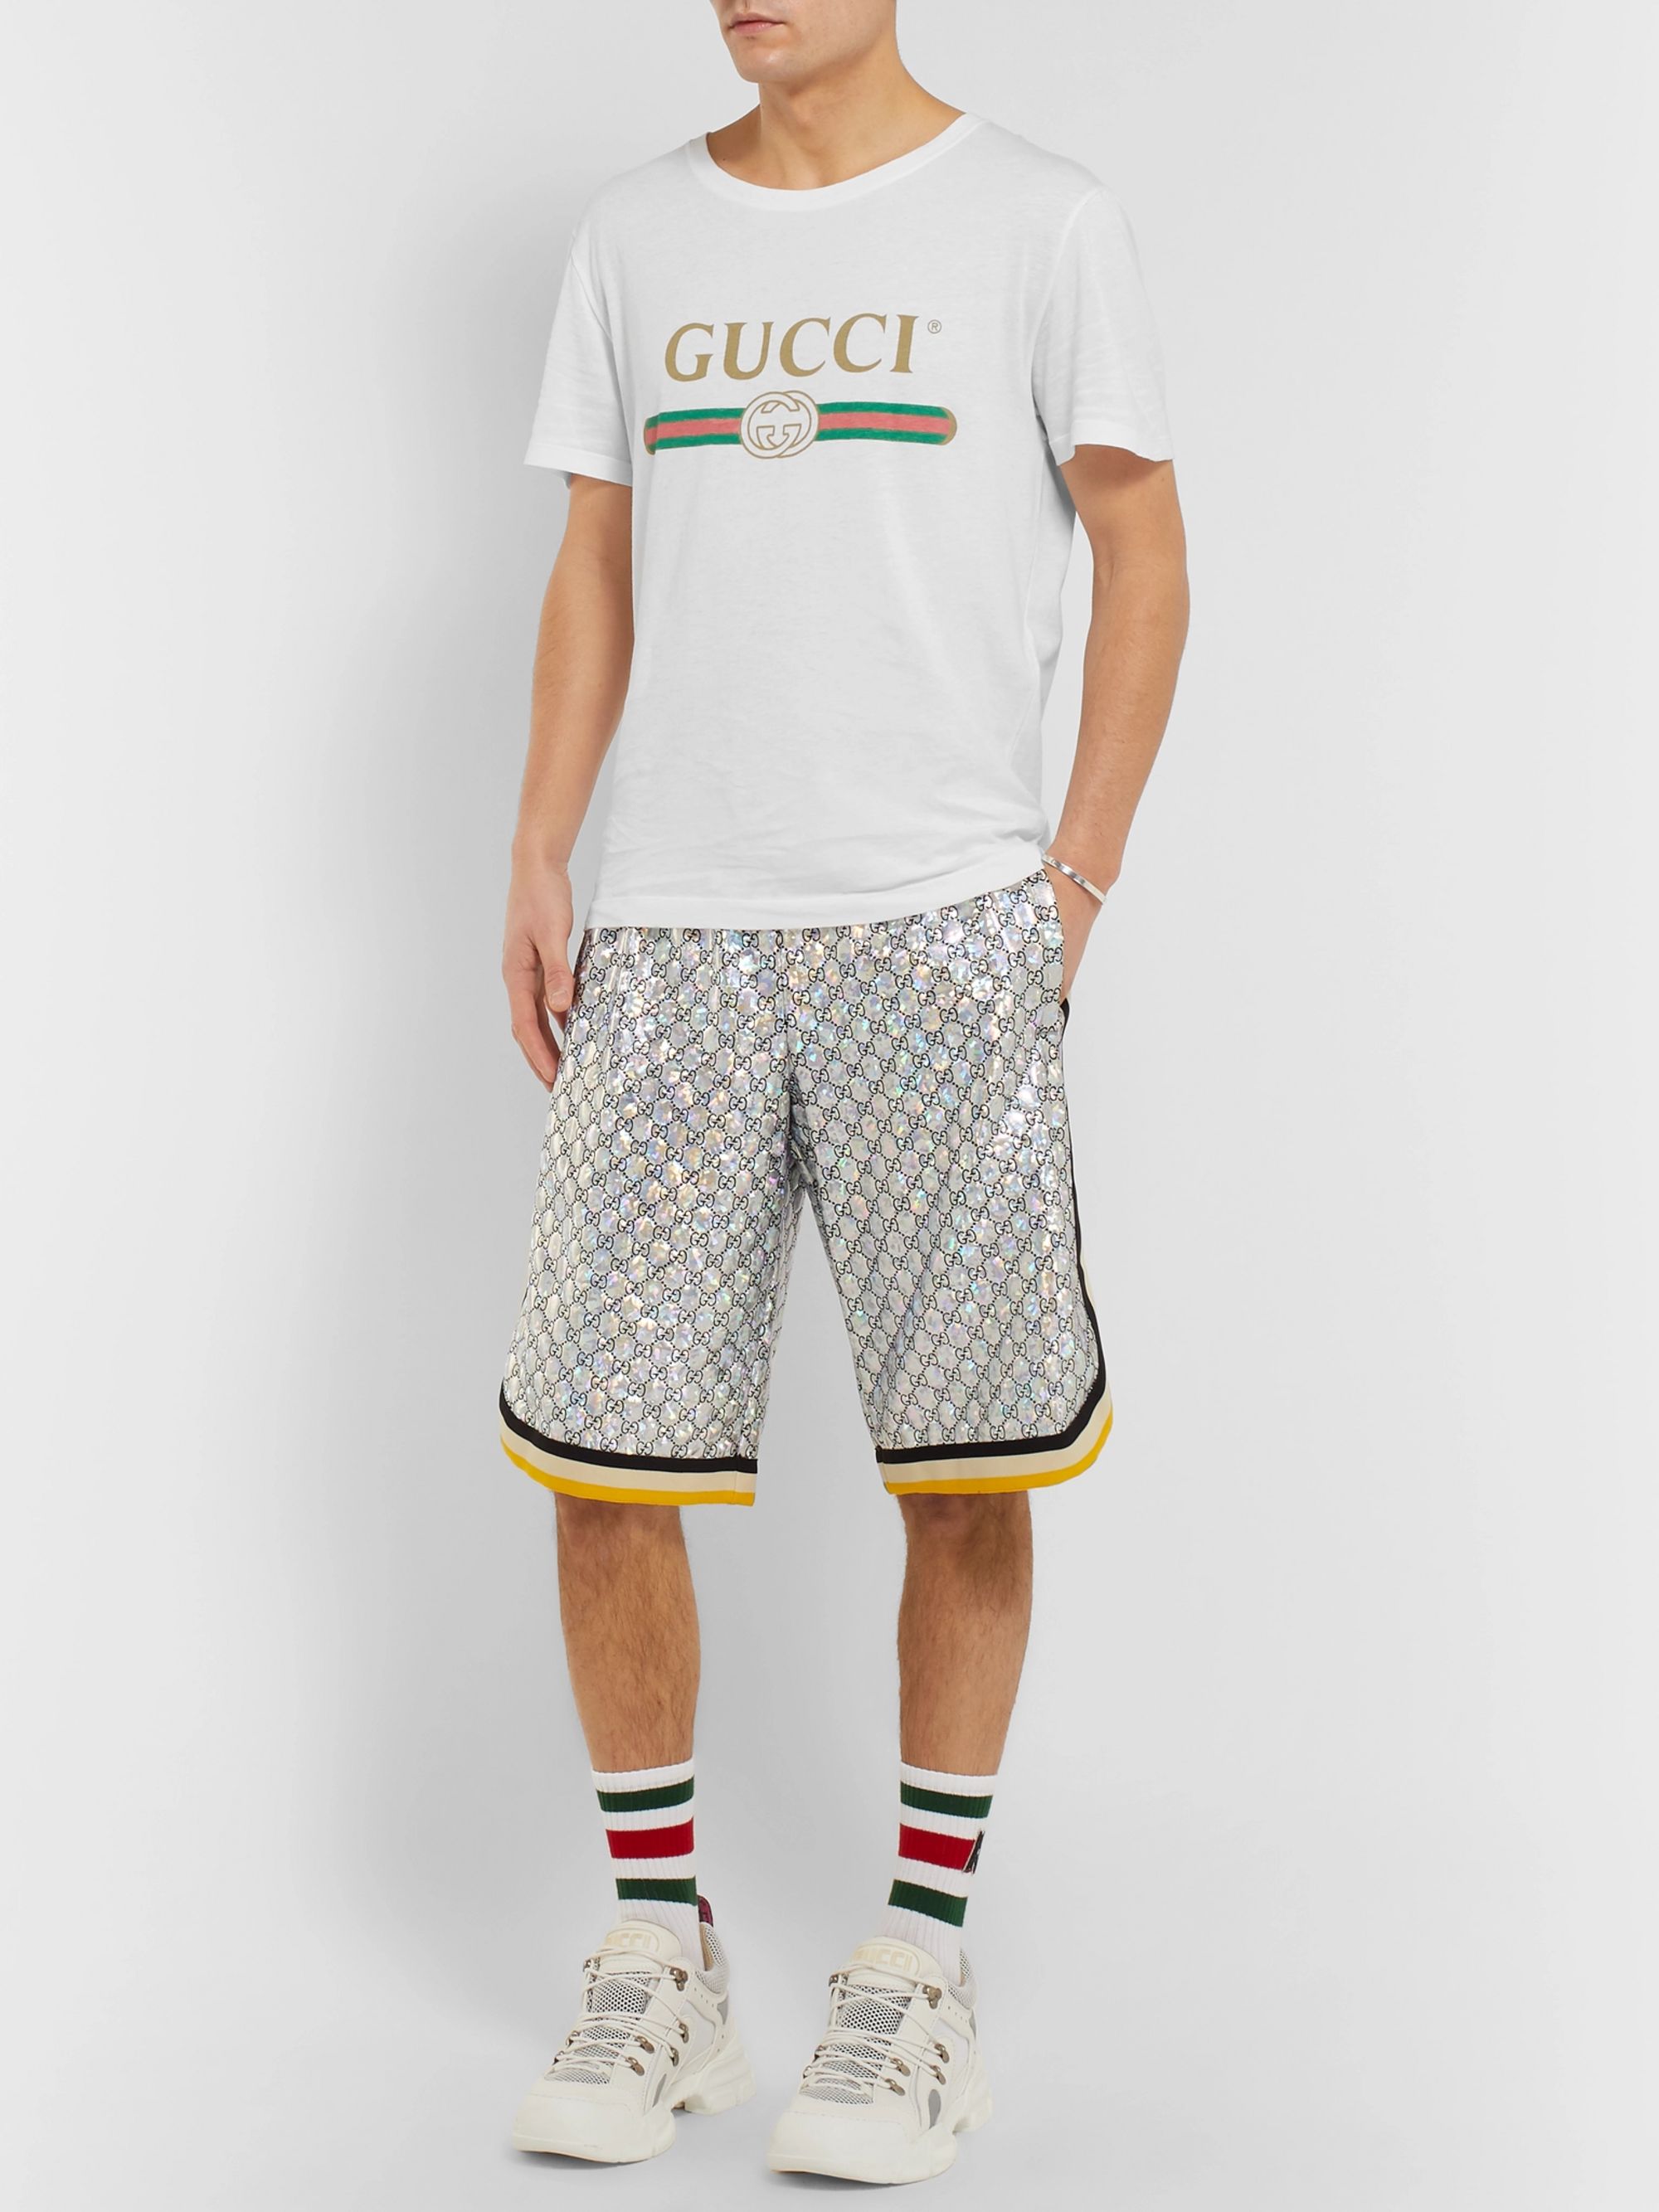 gucci shorts and shirt